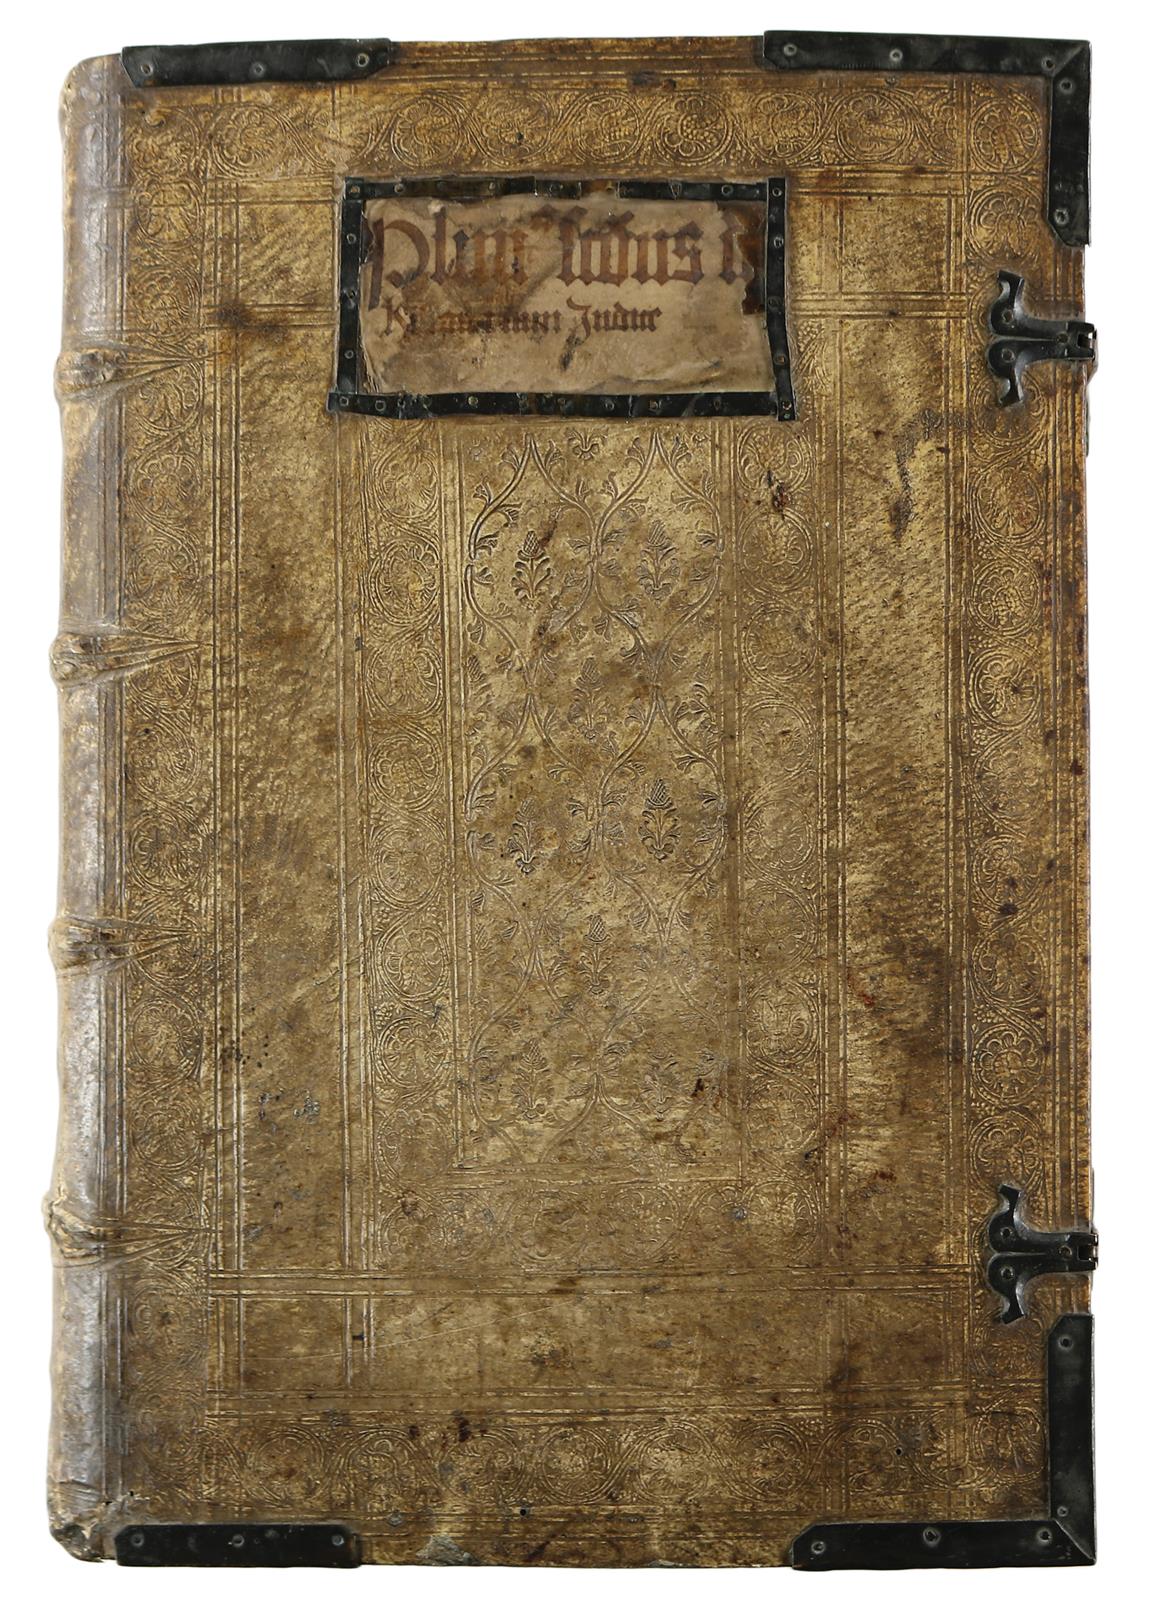 Plinius Secundus,C. | Bild Nr.1